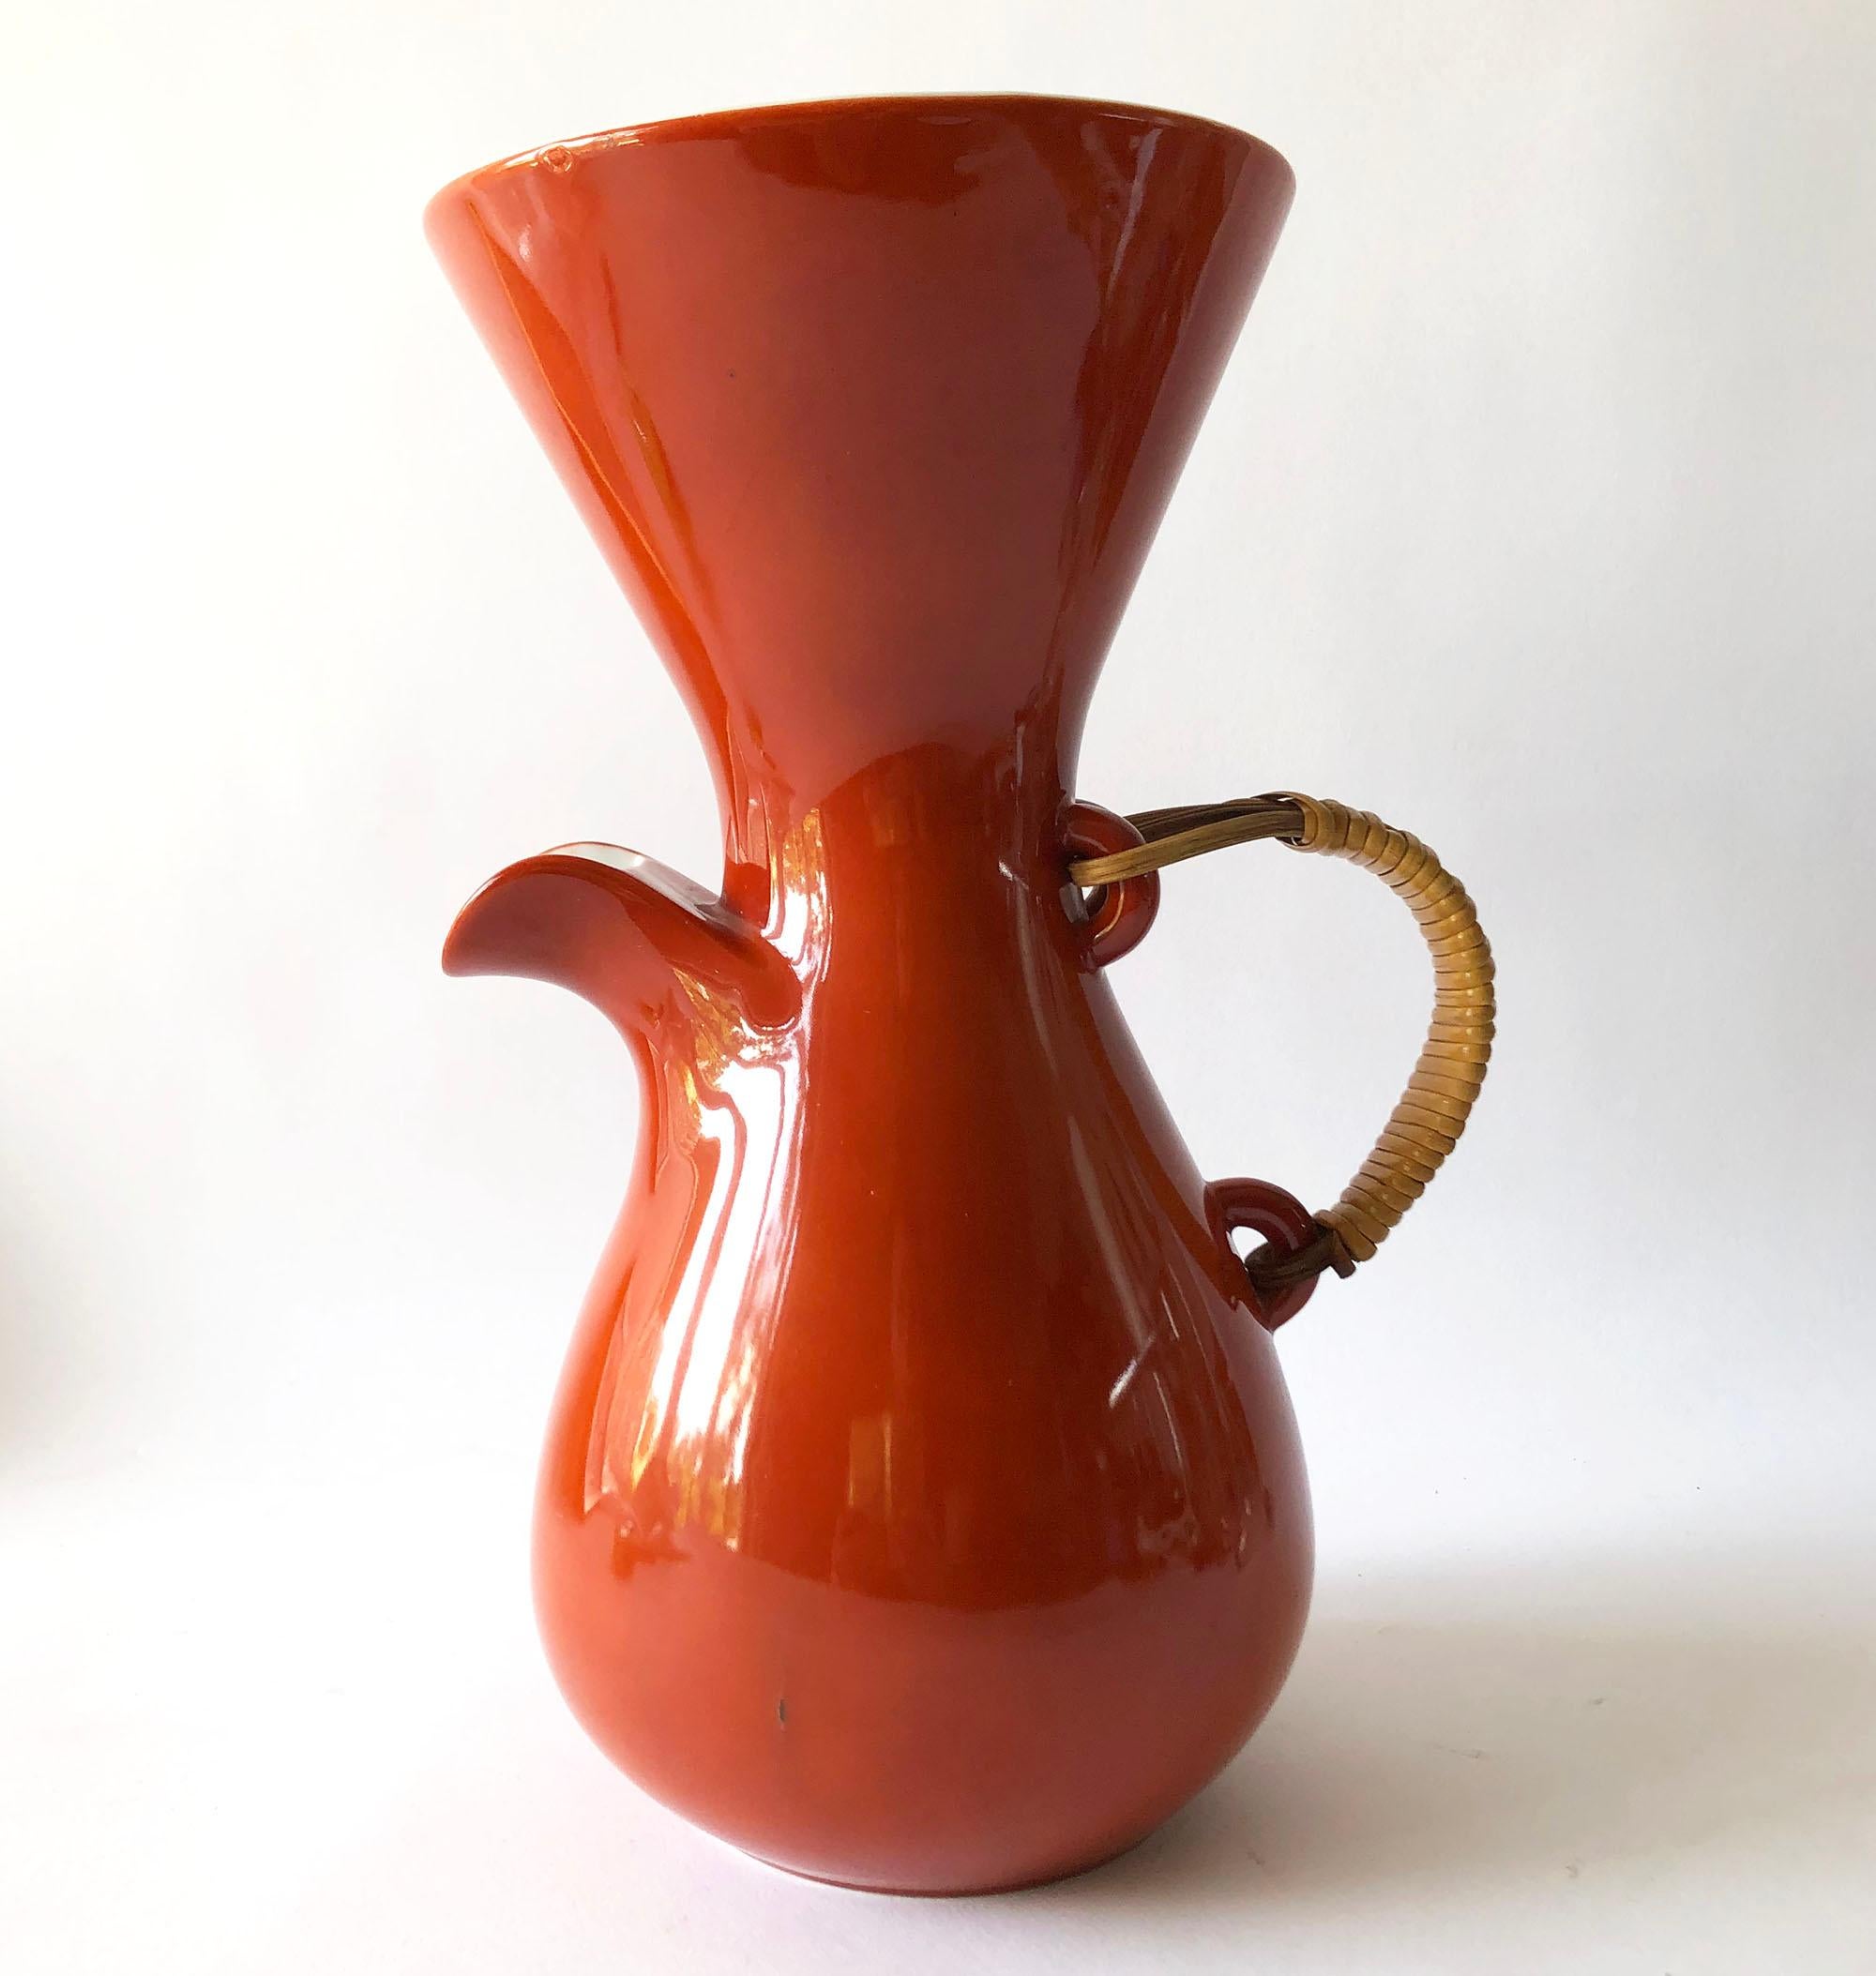 Kaffeekanne oder Krug aus Keramik mit Griff aus Bast, entworfen von Kenji Fugita für Freeman Lederman. Der Krug misst 11,5